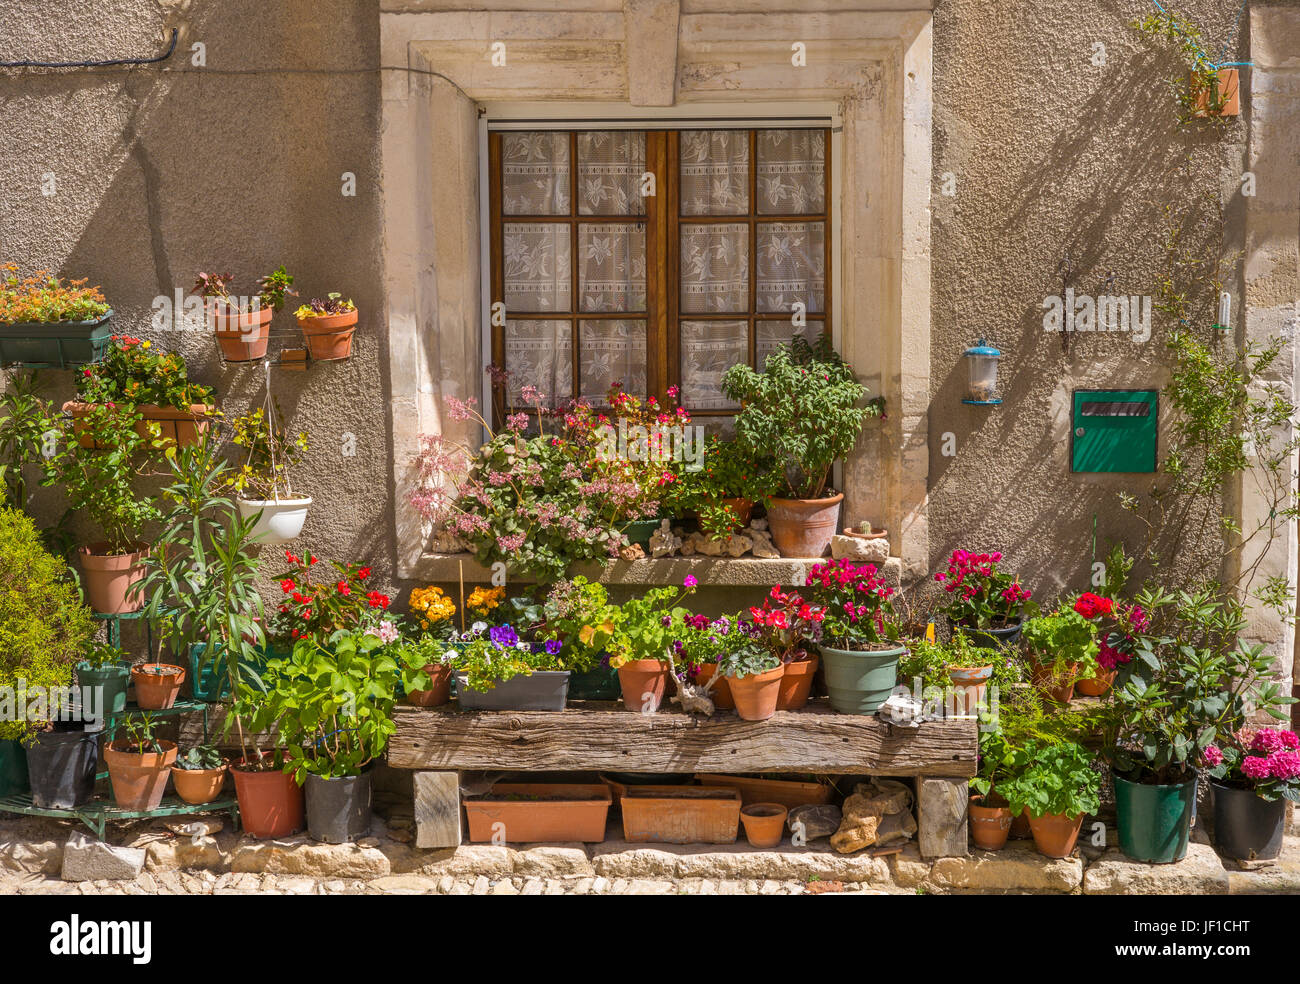 Blumenfenster dans Cabrières-d'Avignon, Provence, France Banque D'Images